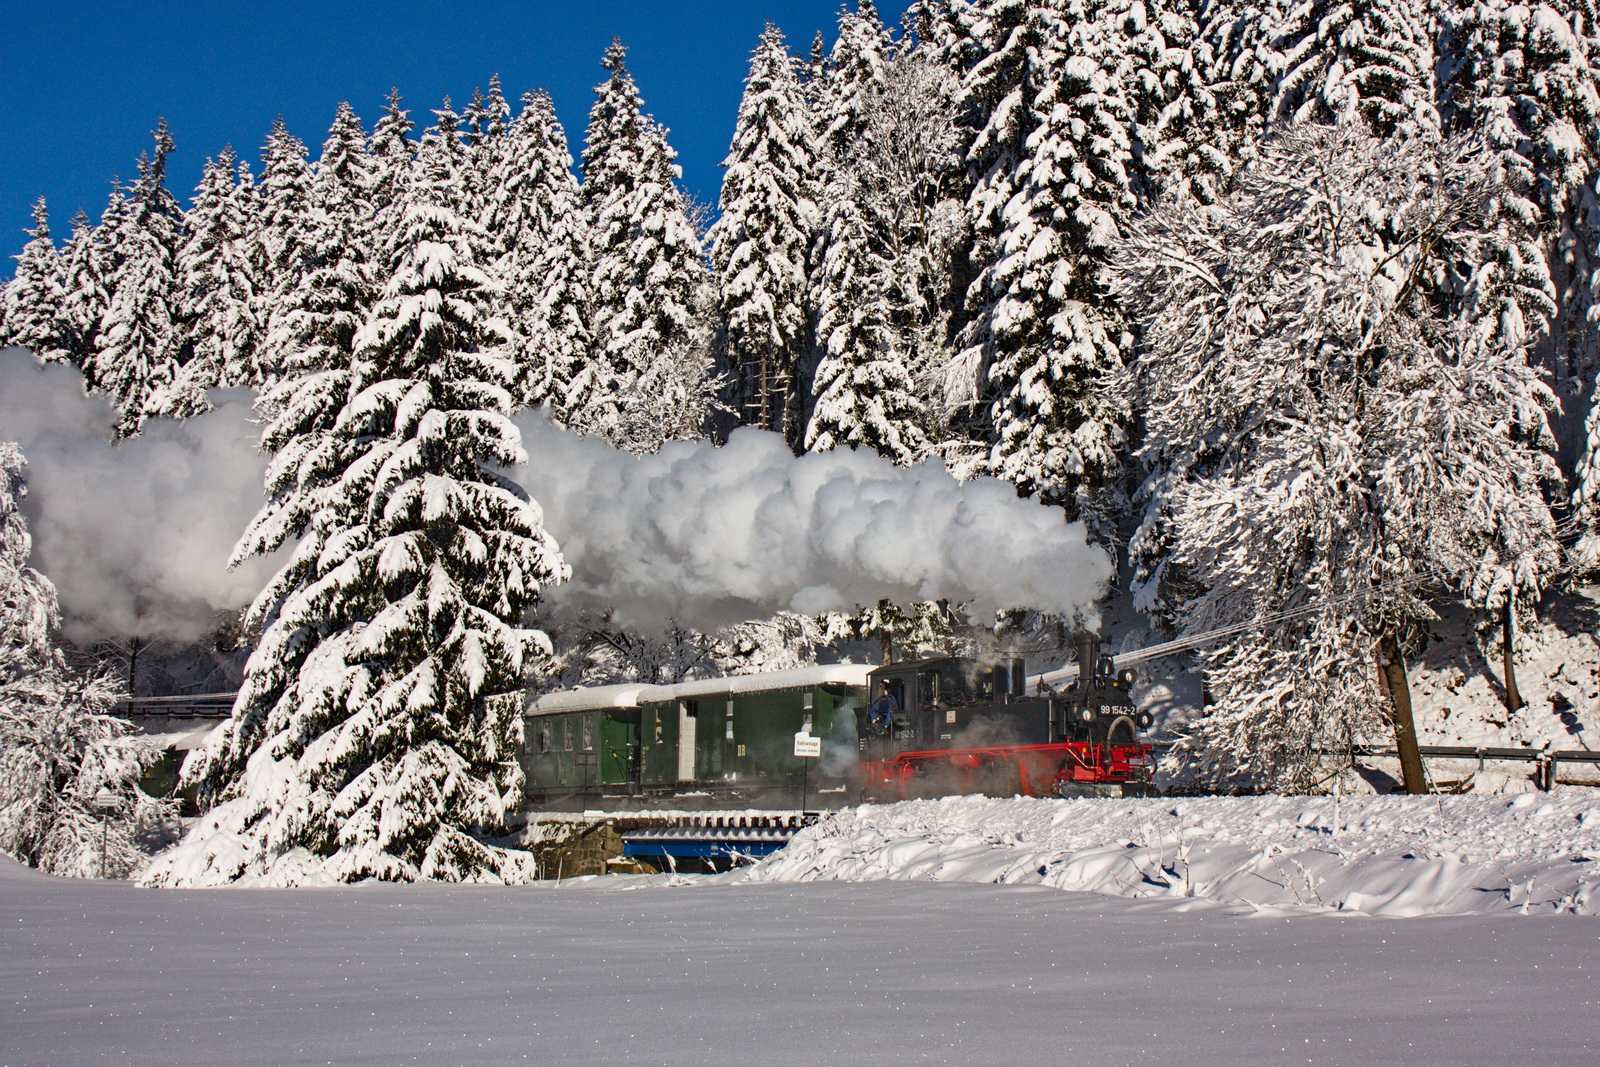 Durch dichtverschneiten Wald nähert sich der Zug dem Haltepunkt Forellenhof.